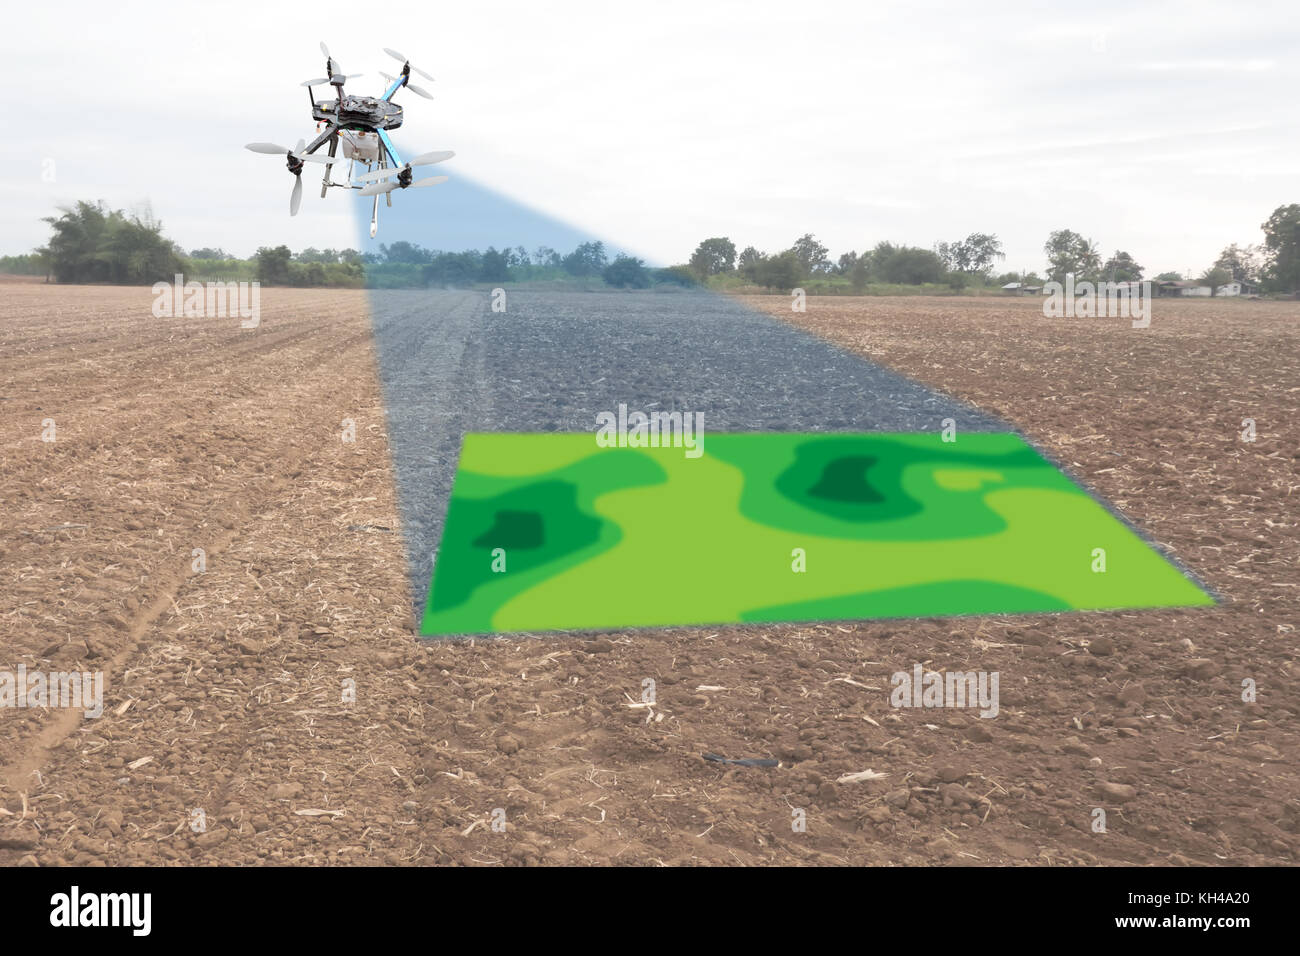 Drone für Landwirtschaft, Drone verwenden Sie für verschiedene Bereiche wie  Forschung Analyse, Sicherheit, Rettung, Gelände Scanning Technologie,  Überwachung Boden Hydratation, yie Stockfotografie - Alamy